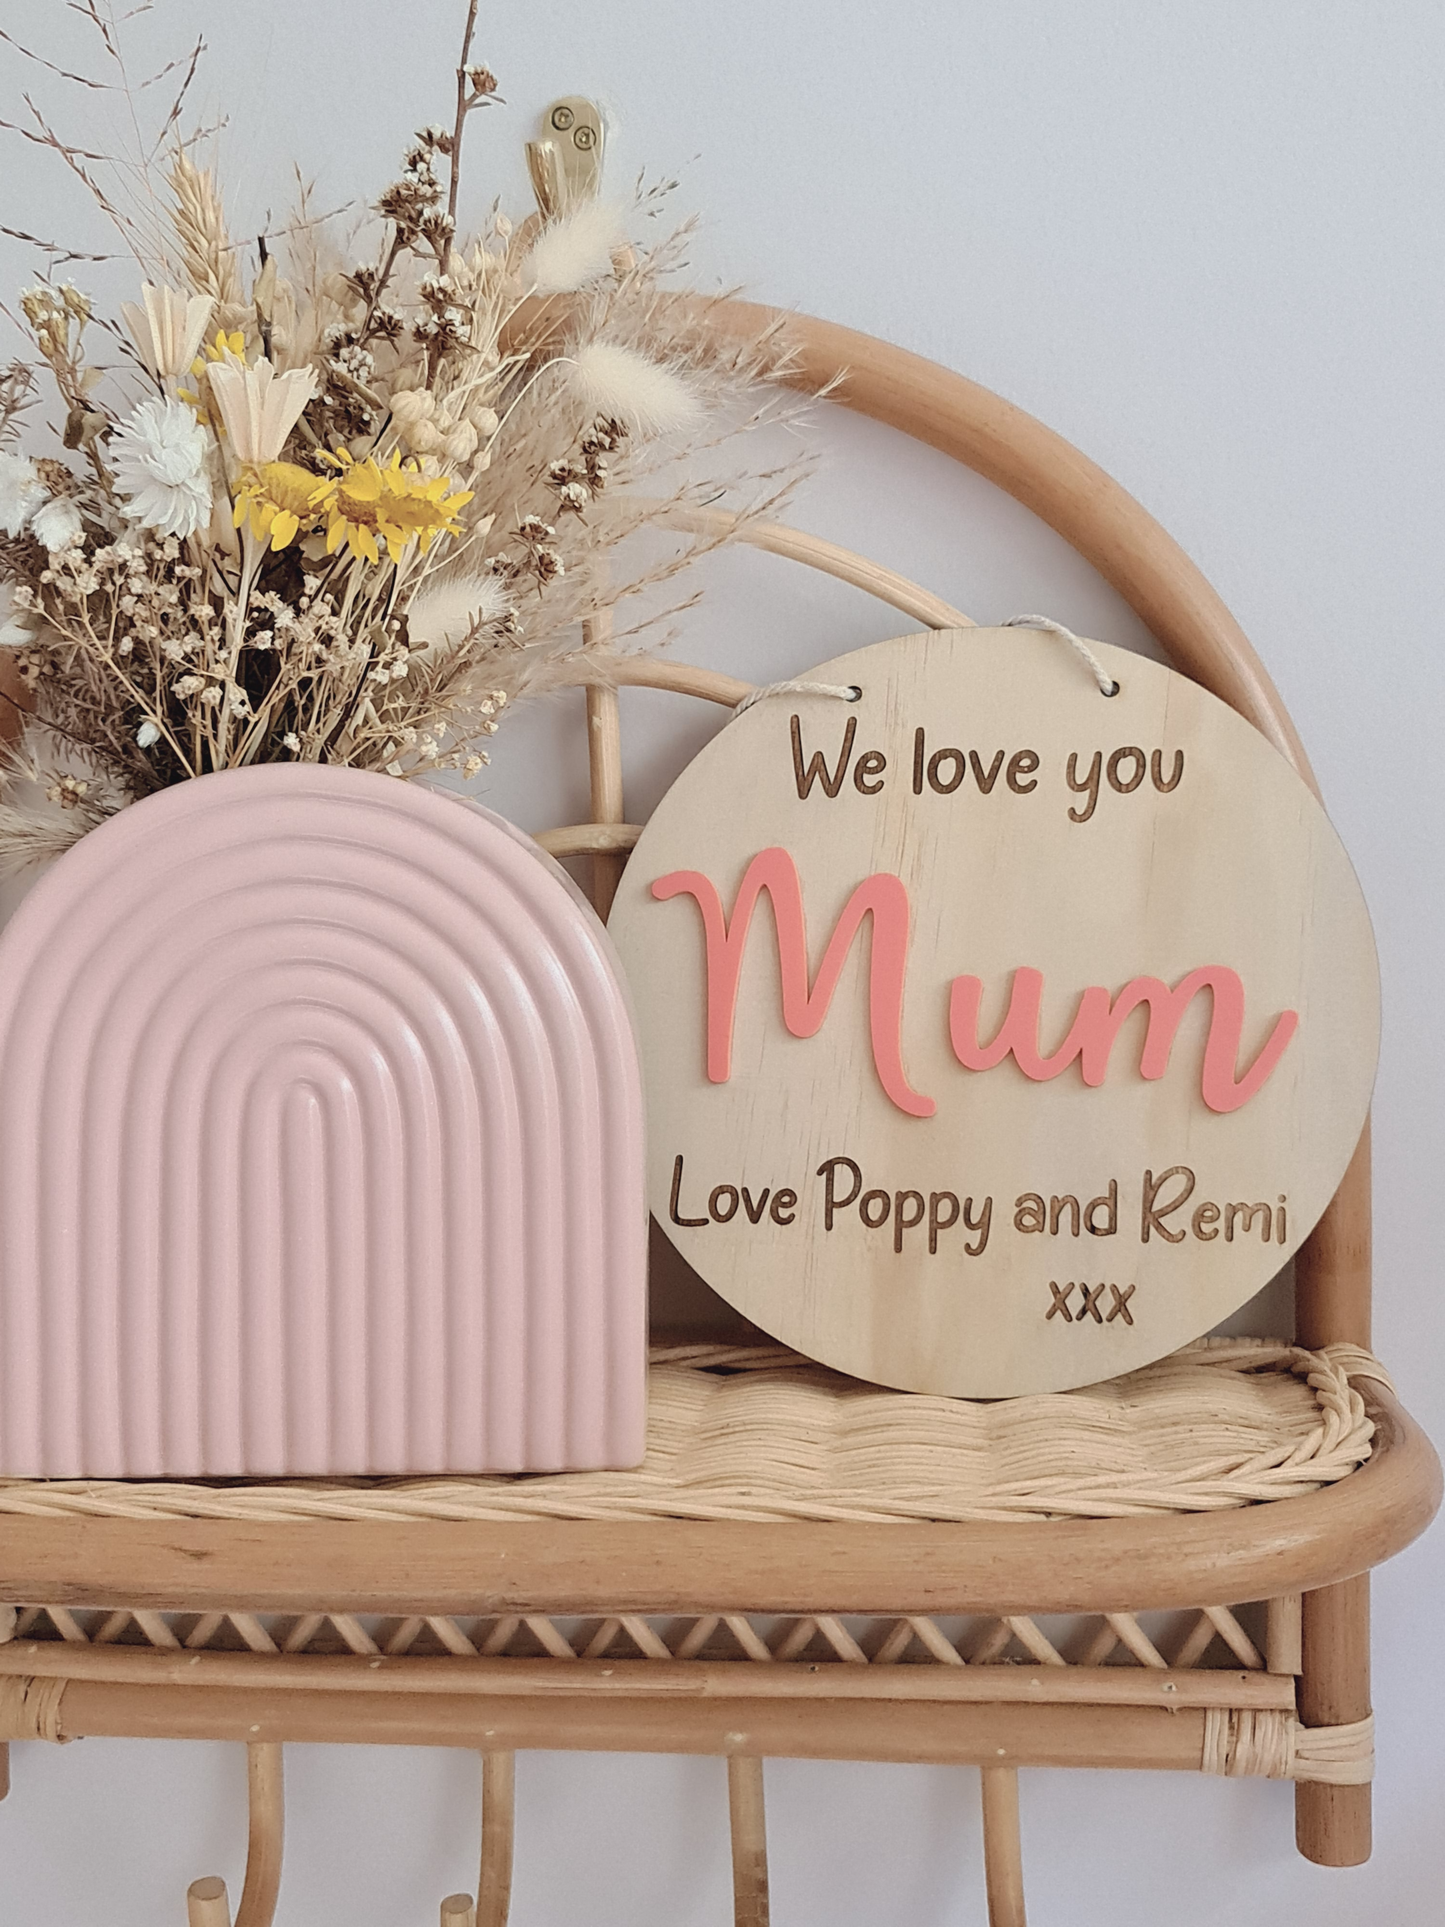 We love you Mum - plaque